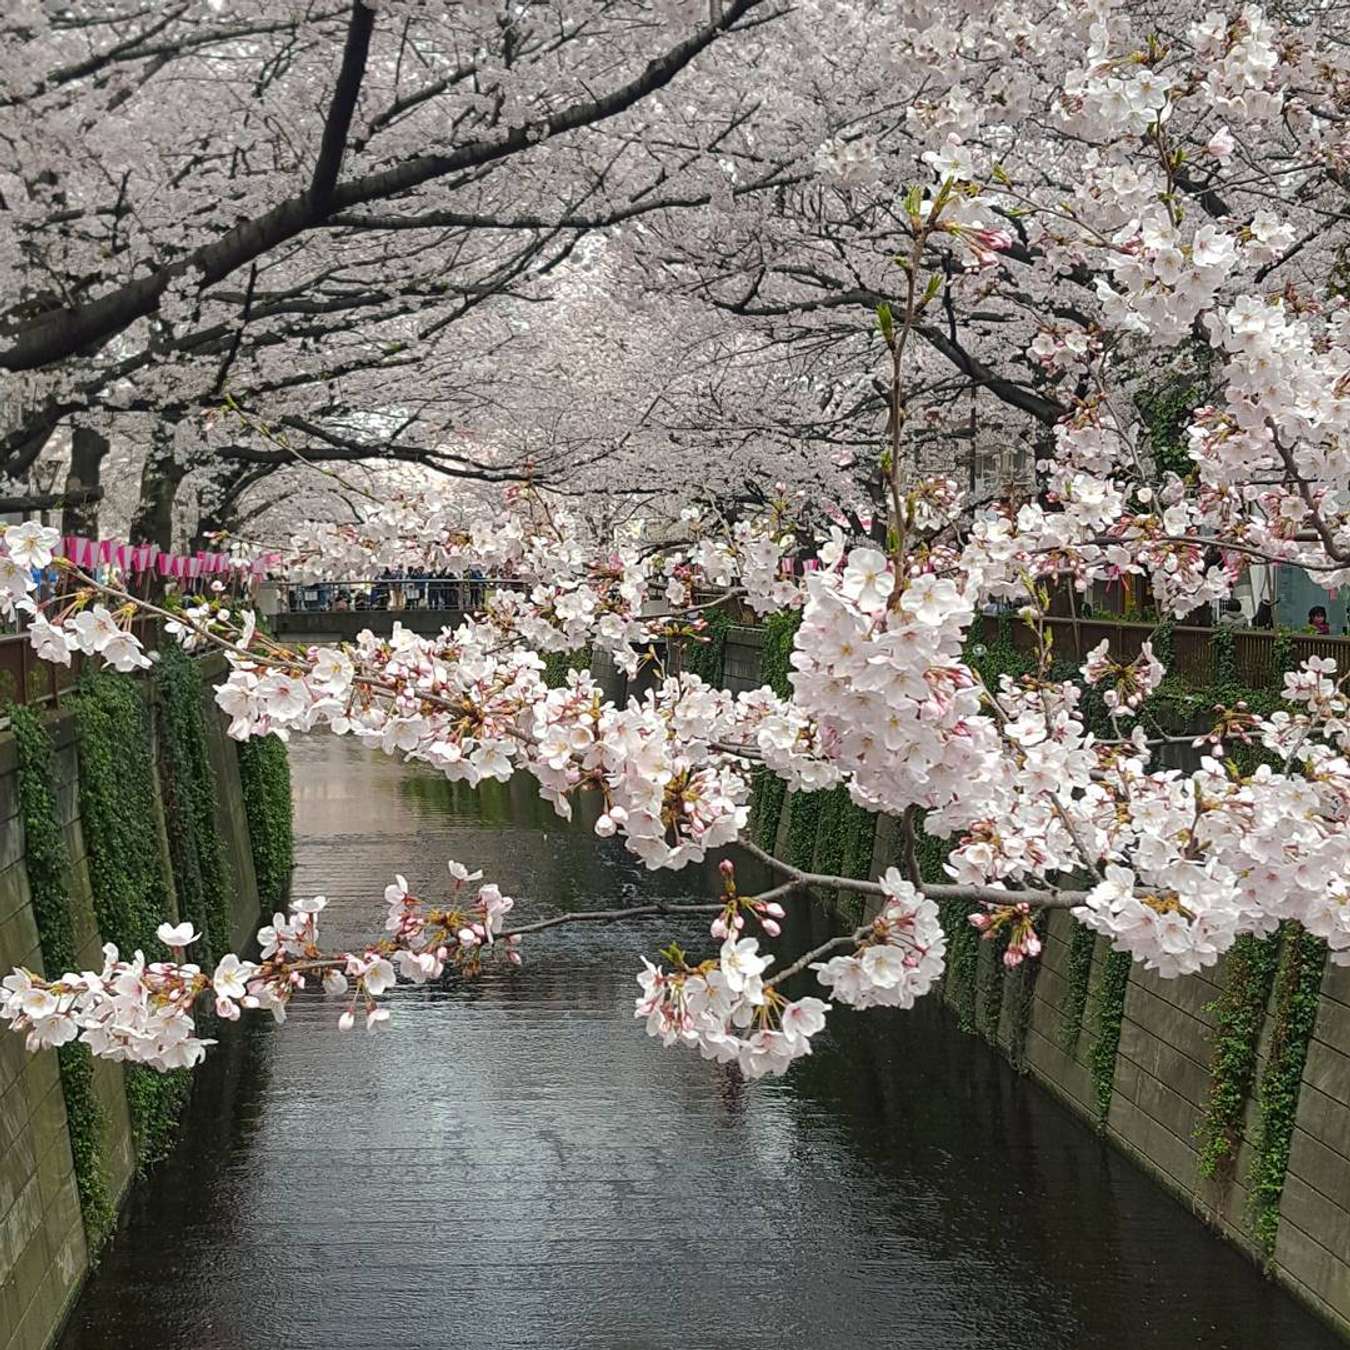 Nhật Bản là quốc gia nổi tiếng với vẻ đẹp của hoa anh đào và có những địa điểm ngắm hoa anh đào đặc biệt khiến cho người ta đổ rất nhiều tâm huyết. Hãy cùng nhau tham quan những khu vườn hoa anh đào ở Kyoto, Tokyo, Nagoya và Hokkaido và một số địa điểm khác, và cảm nhận vẻ đẹp tuyệt vời của những cây hoa anh đào huyền thoại.